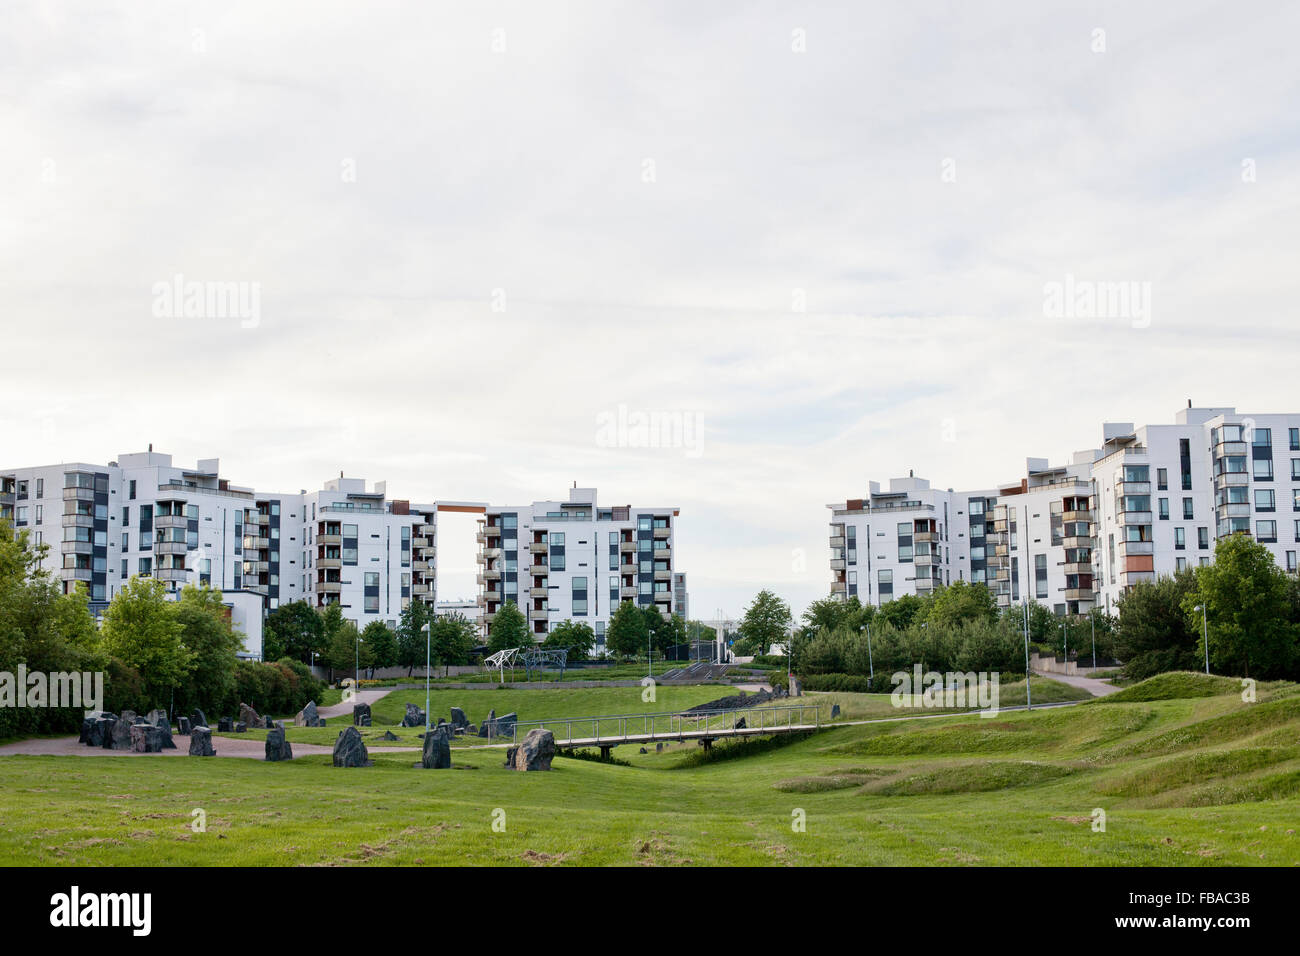 Finland, Uusimaa, Helsinki, Vuosaari, Green park in residential district Stock Photo